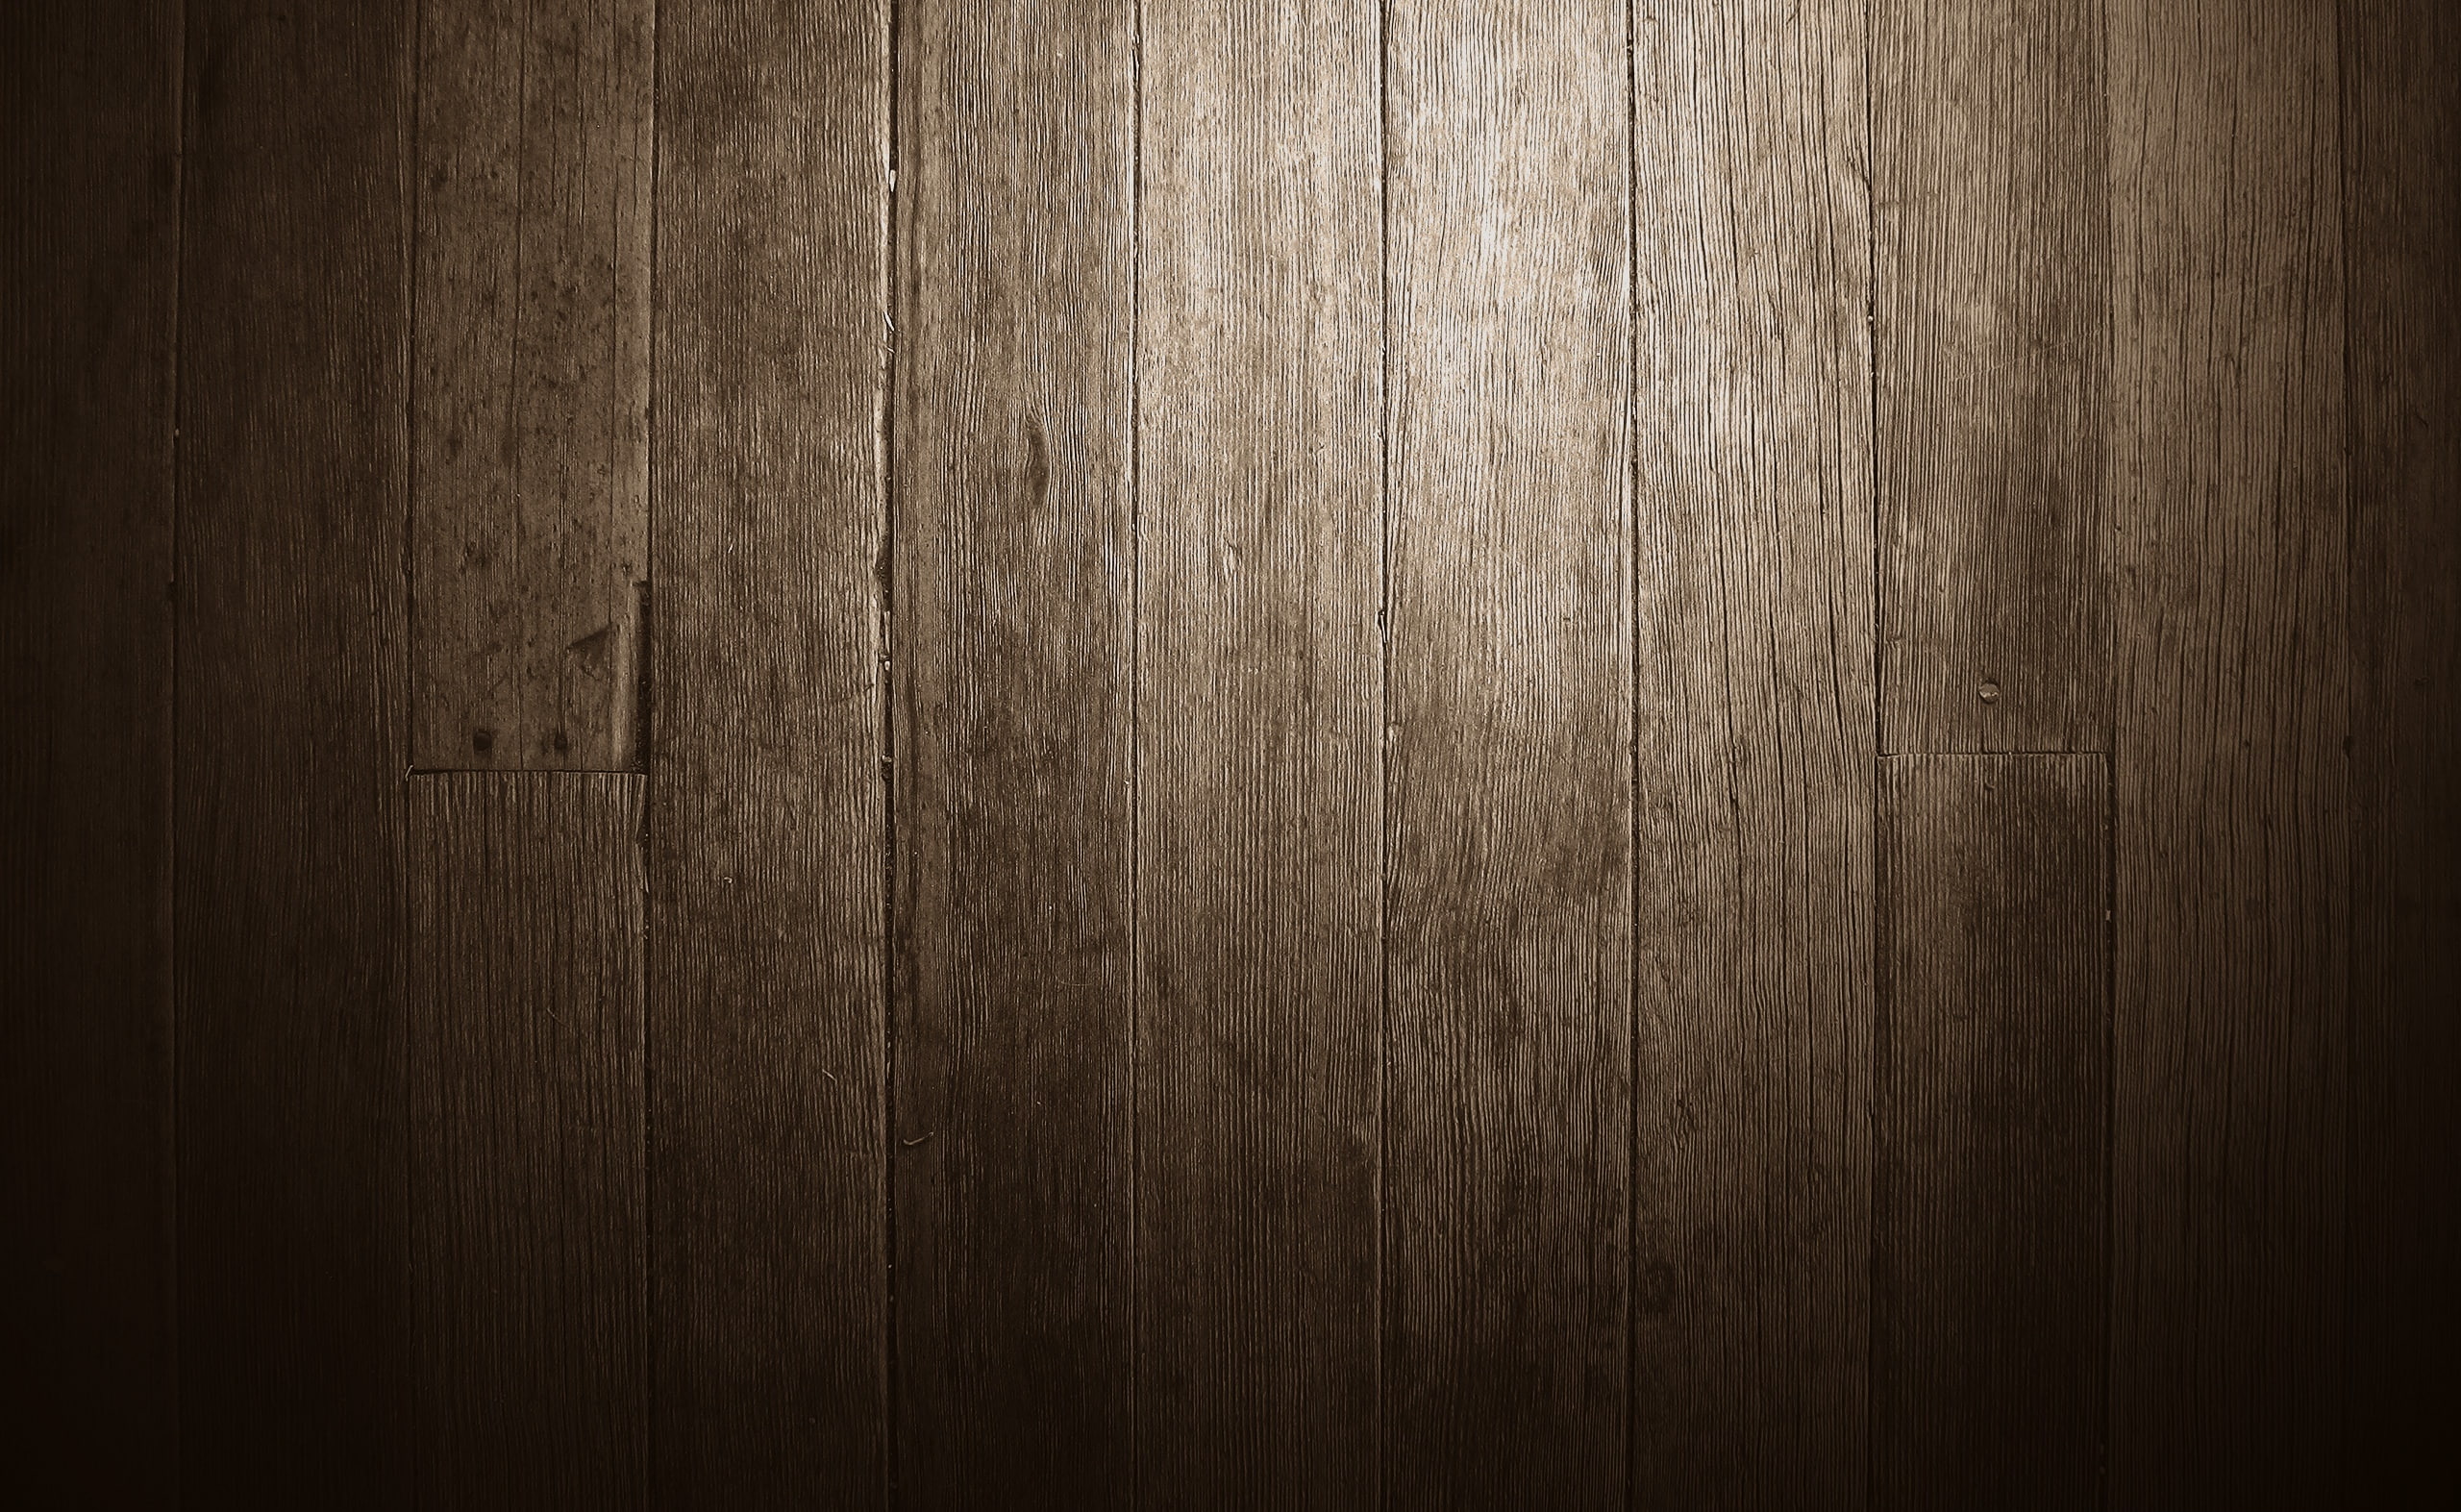 Wooden Floor, brown wooden parquet floor, Vintage, wood - material